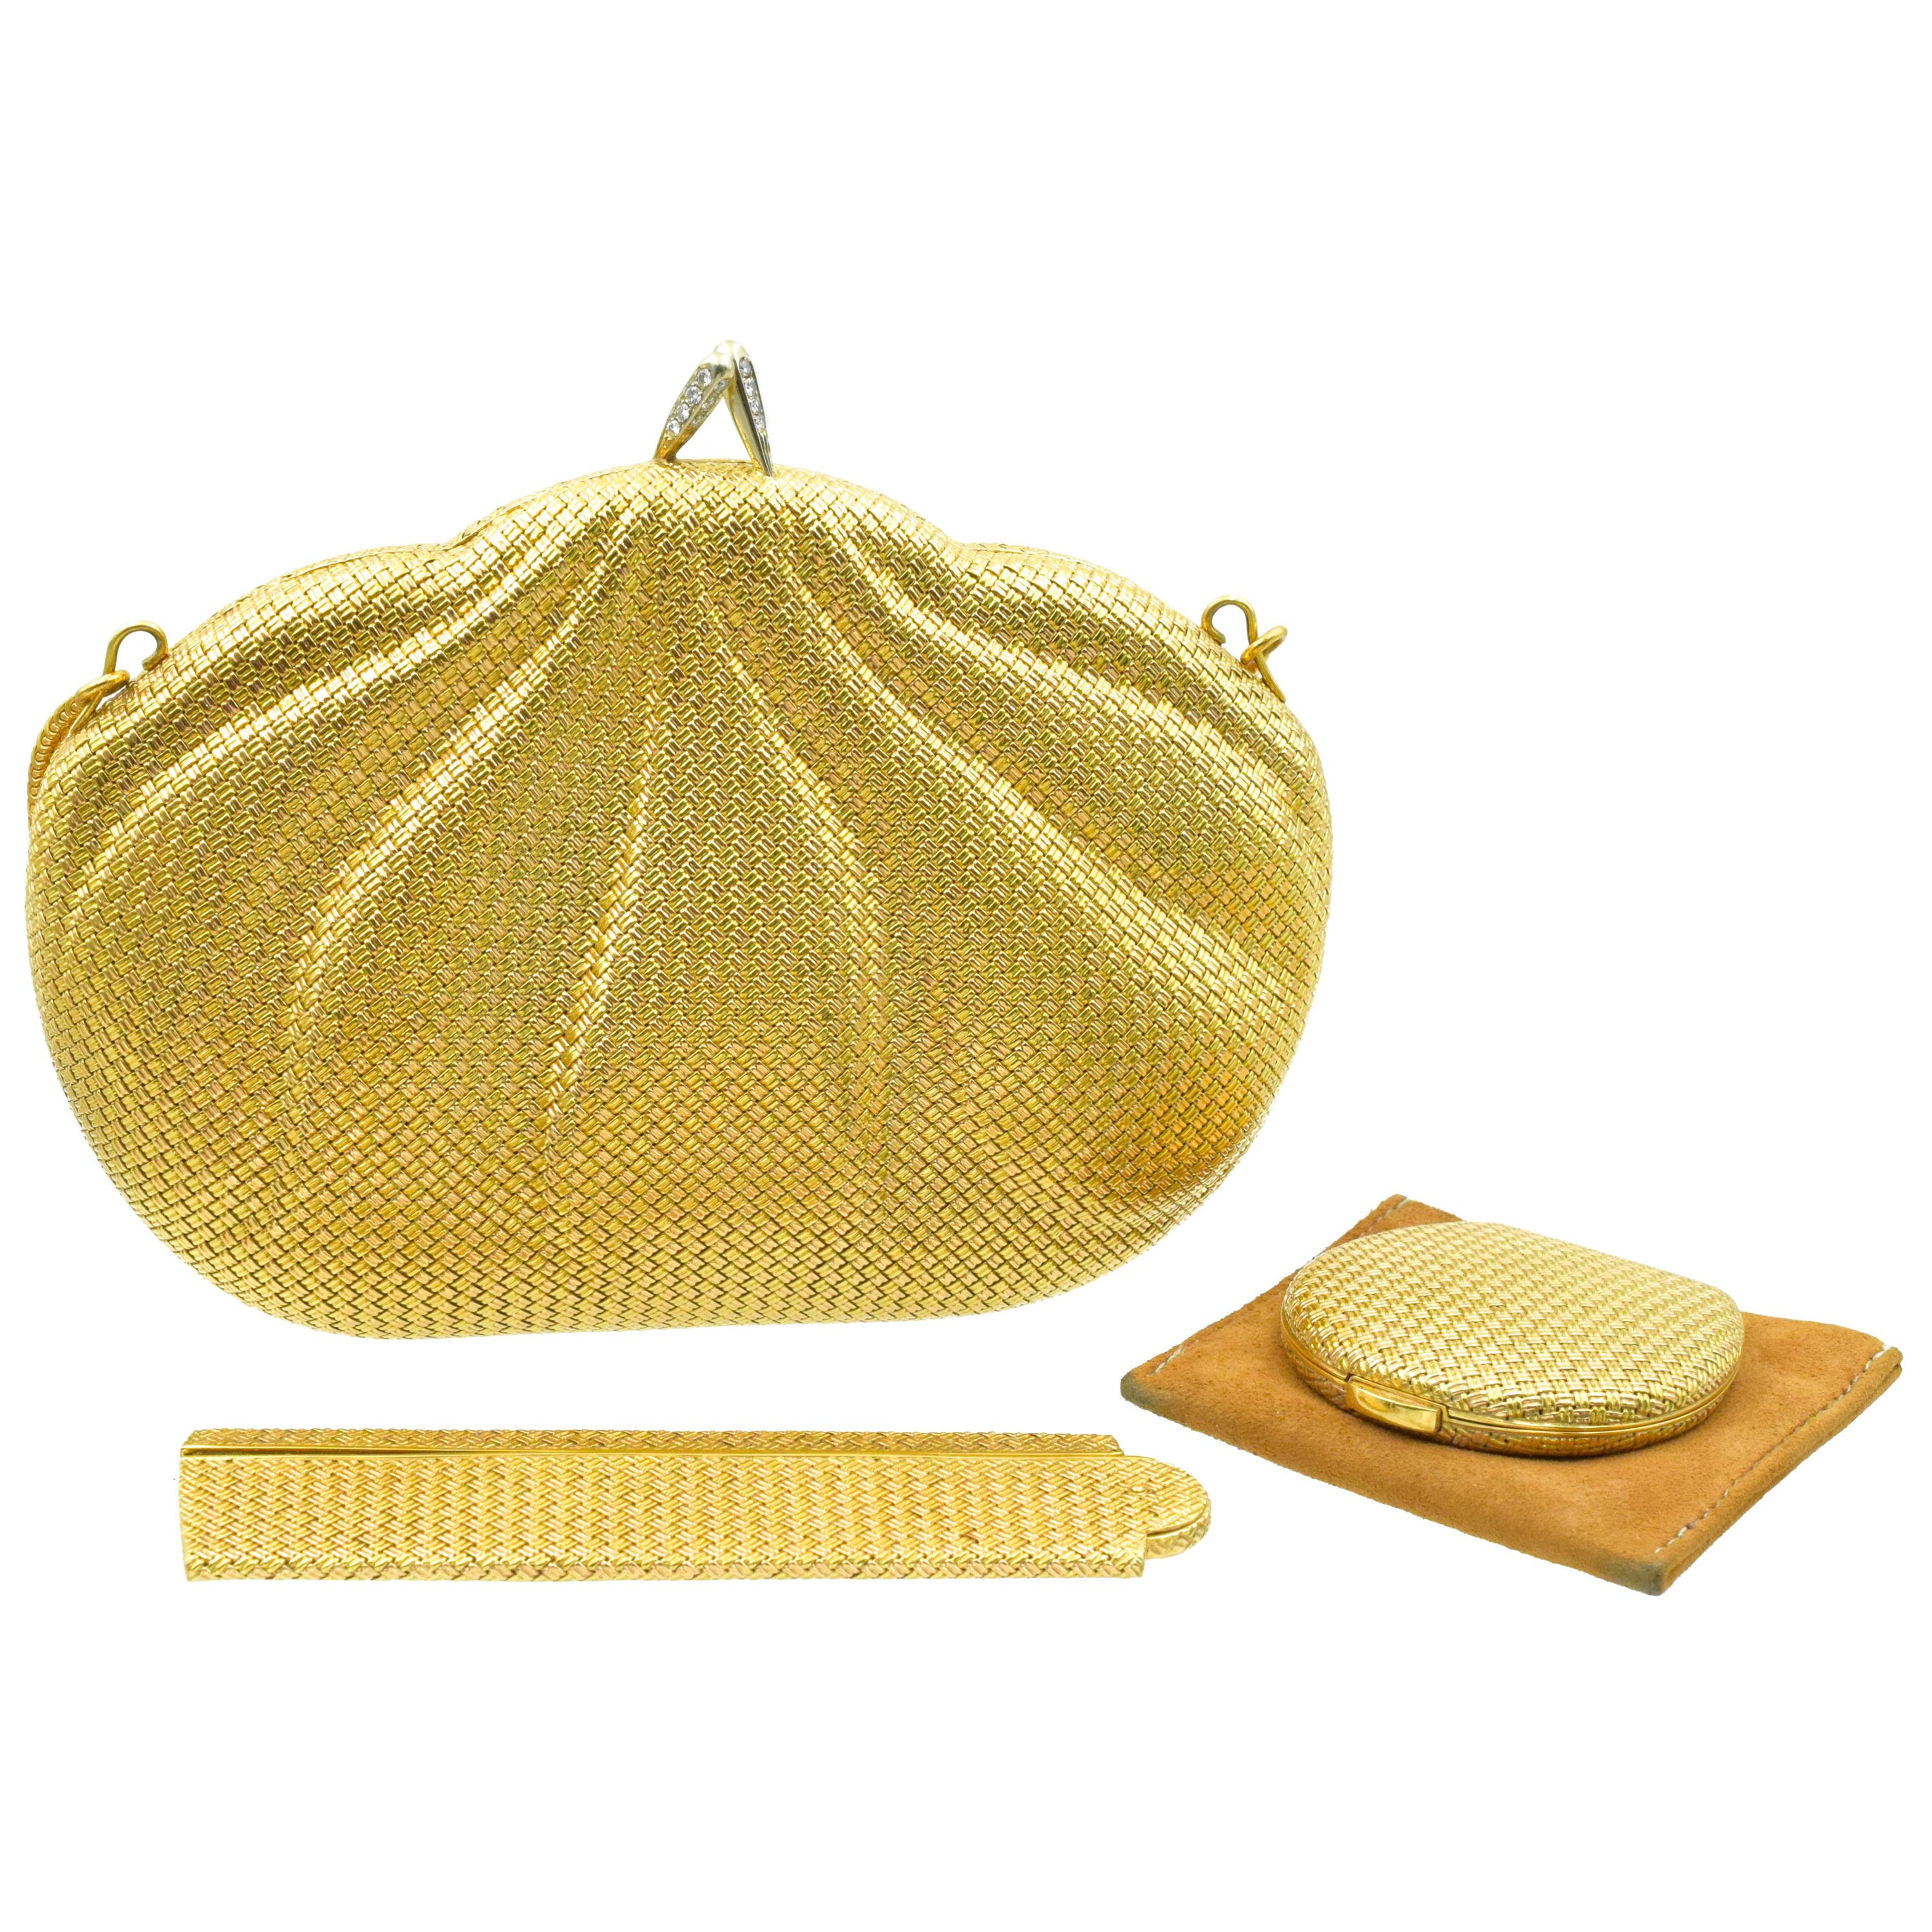 Piaget Gold- und Diamant-Abendtasche, ein Kamm und ein pulverbeschichtetes